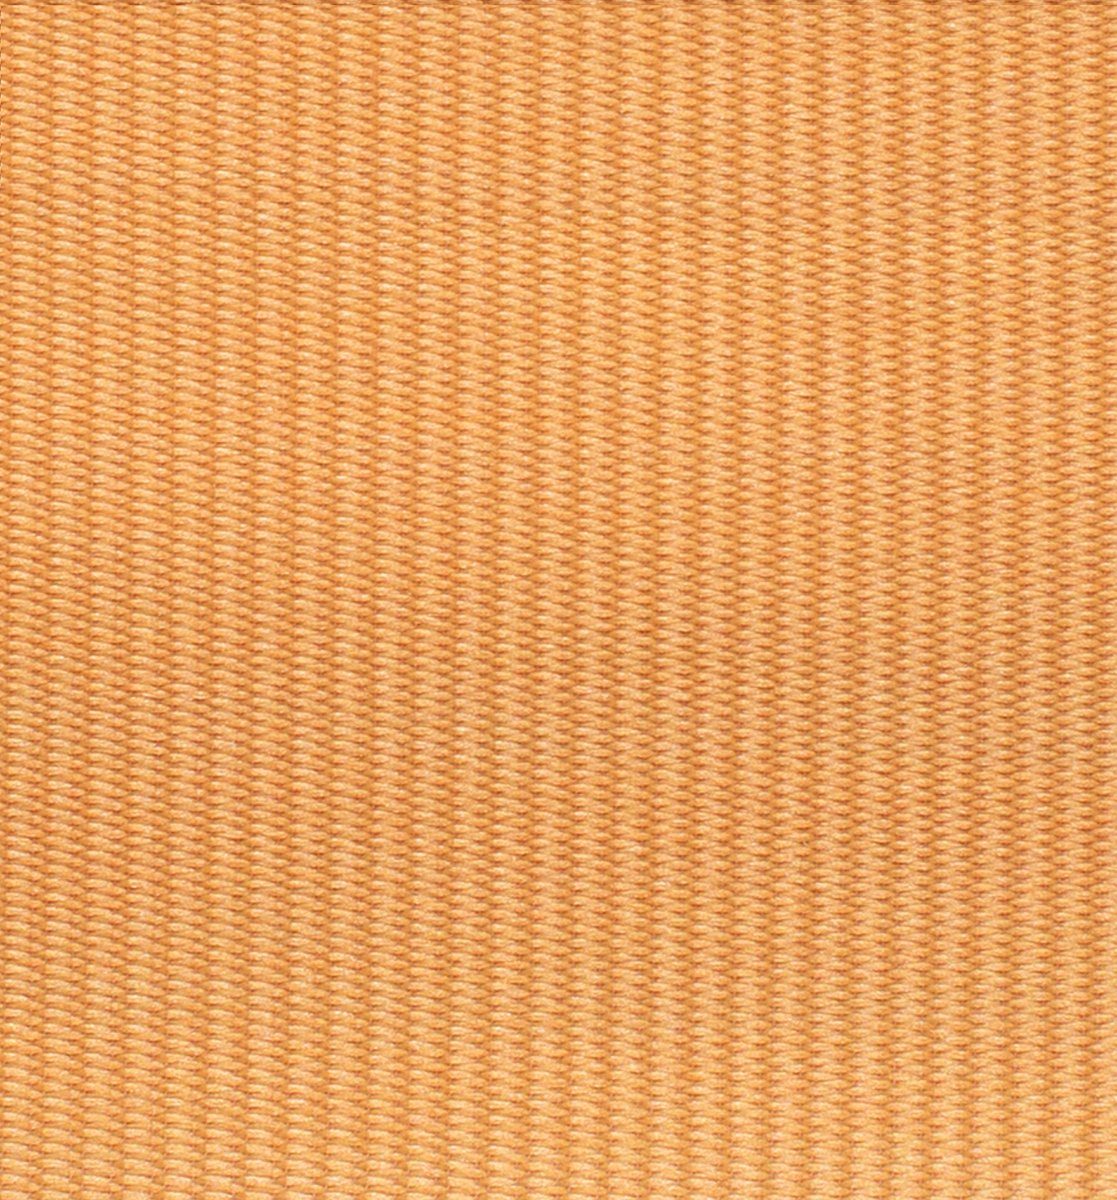 DomDeco, oder Klemm-Fix Orange mit Doppelrollo Doppelrollo Schraubmontage Klemm- Duo-Rollo Klemmträger, Fenster-Rollo/Seitenz,